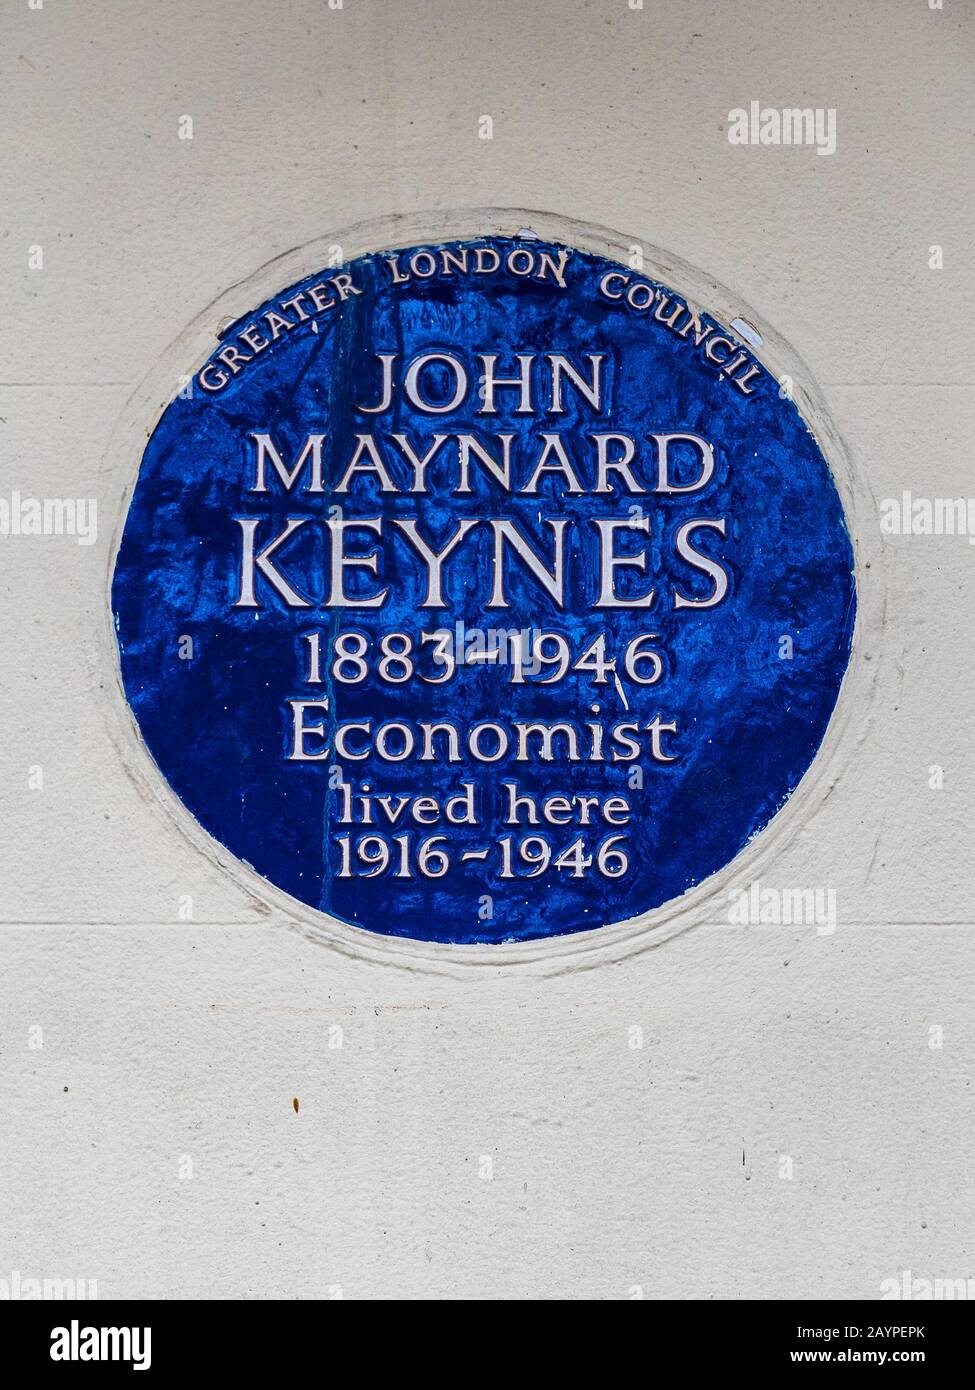 John Maynard Keynes Placa azul en su casa en 46 Gordon Square, Bloomsbury, Londres. El destacado economista vivió aquí entre 1916 y 1946. Foto de stock